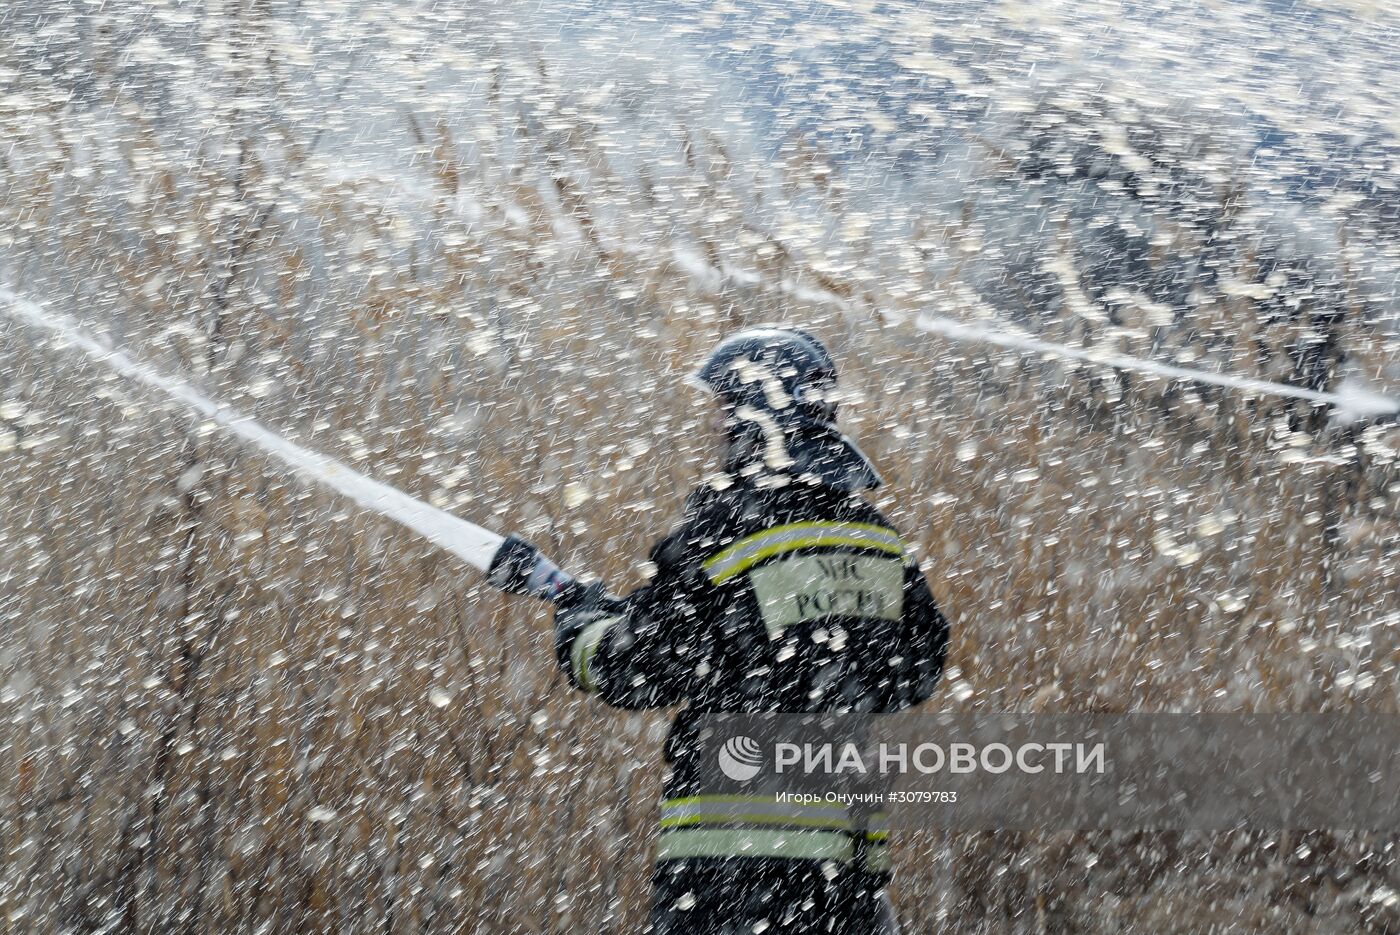 Учения МЧС по тушению лесных пожаров в Хабаровске